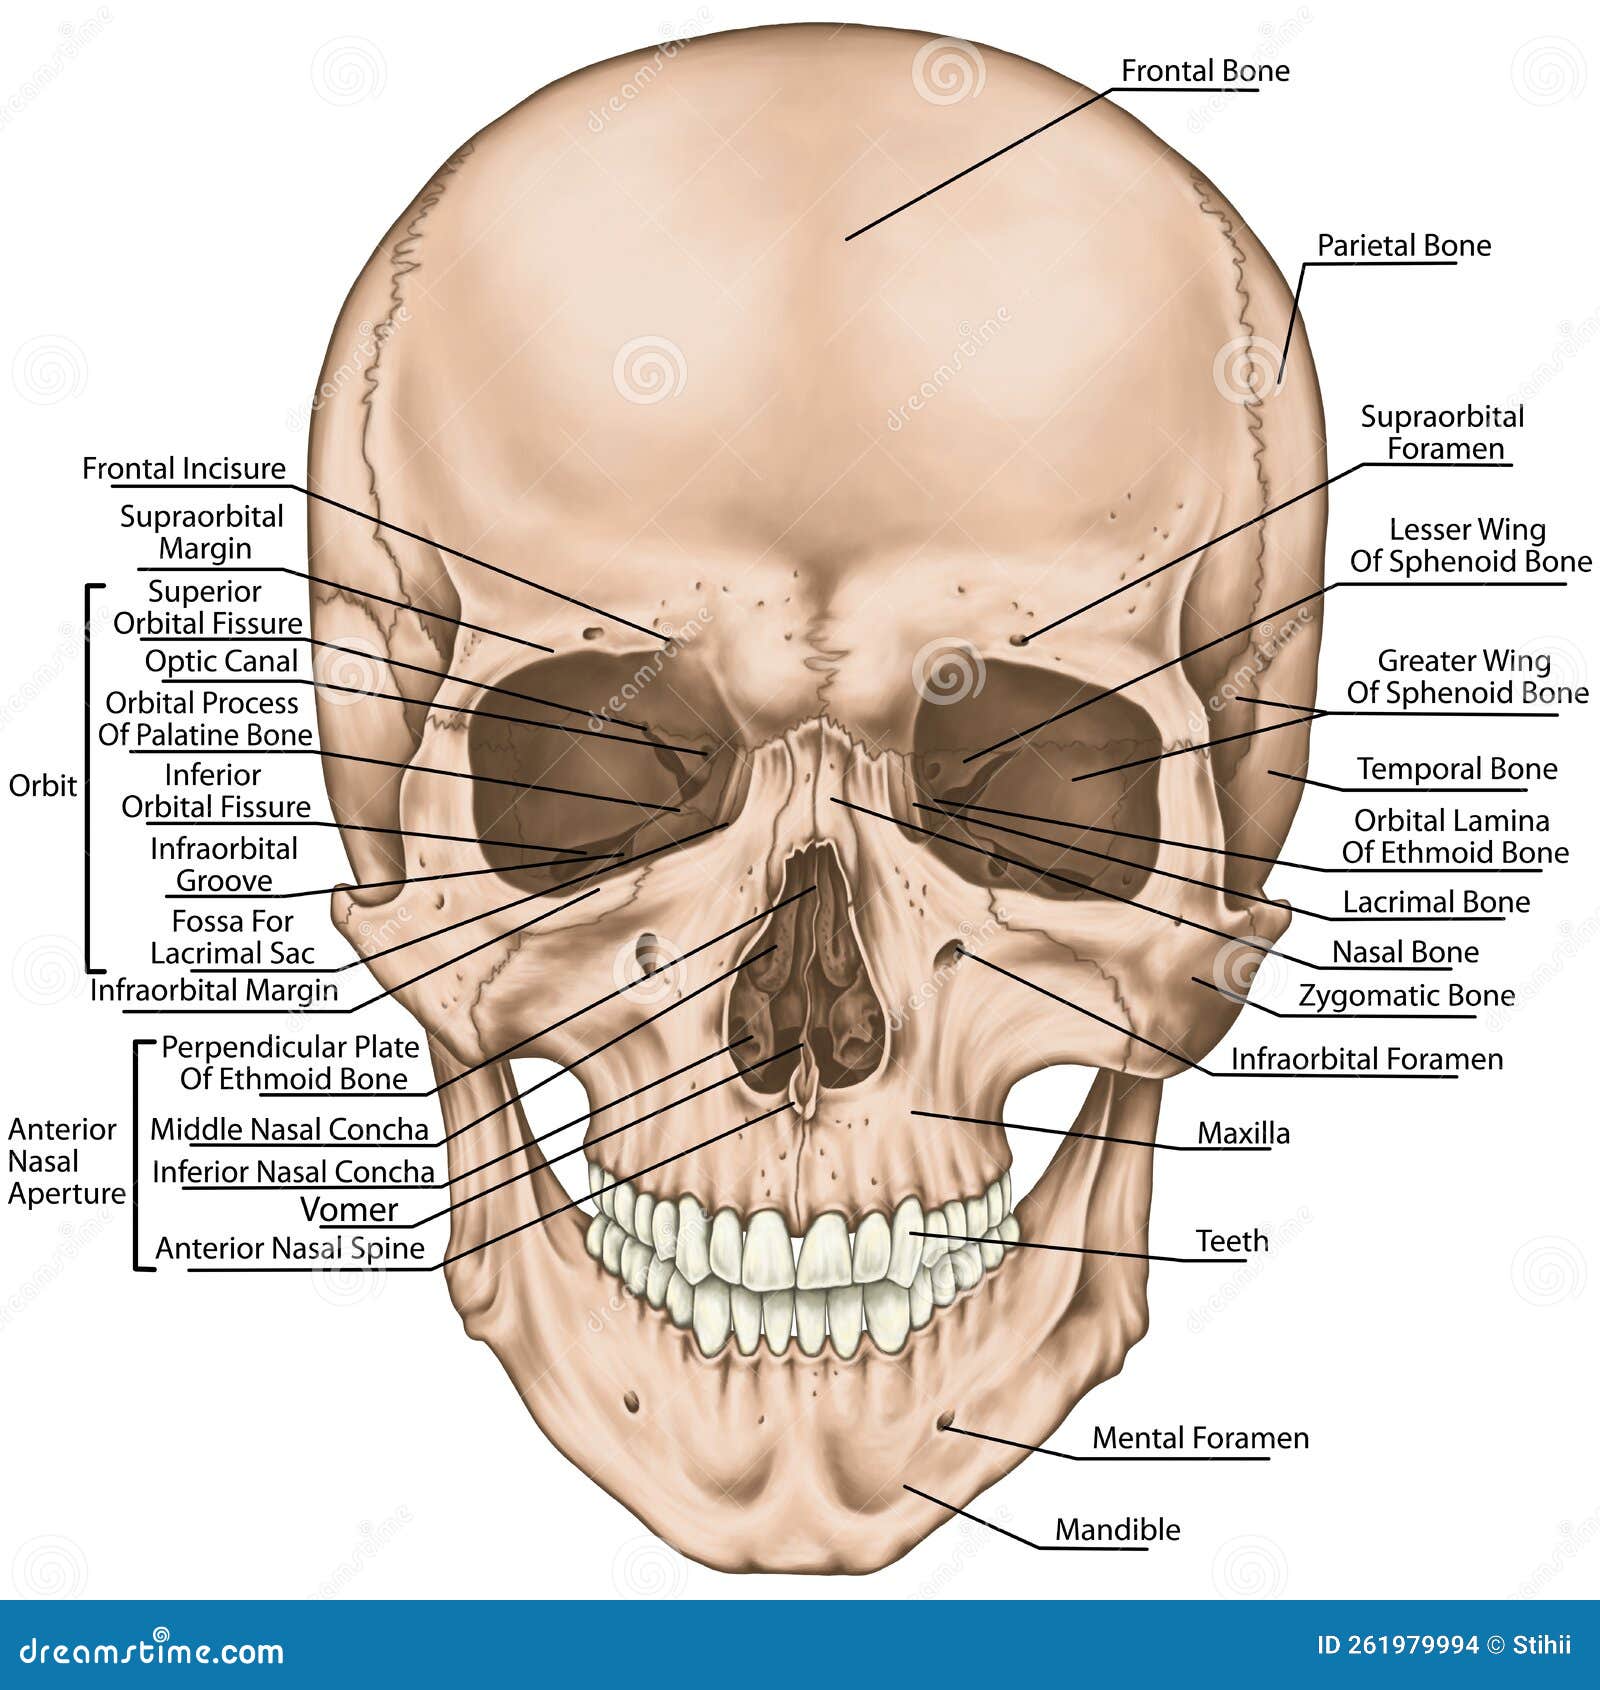 Vista lateral do crânio do quati, detalhe do maxilar (mx